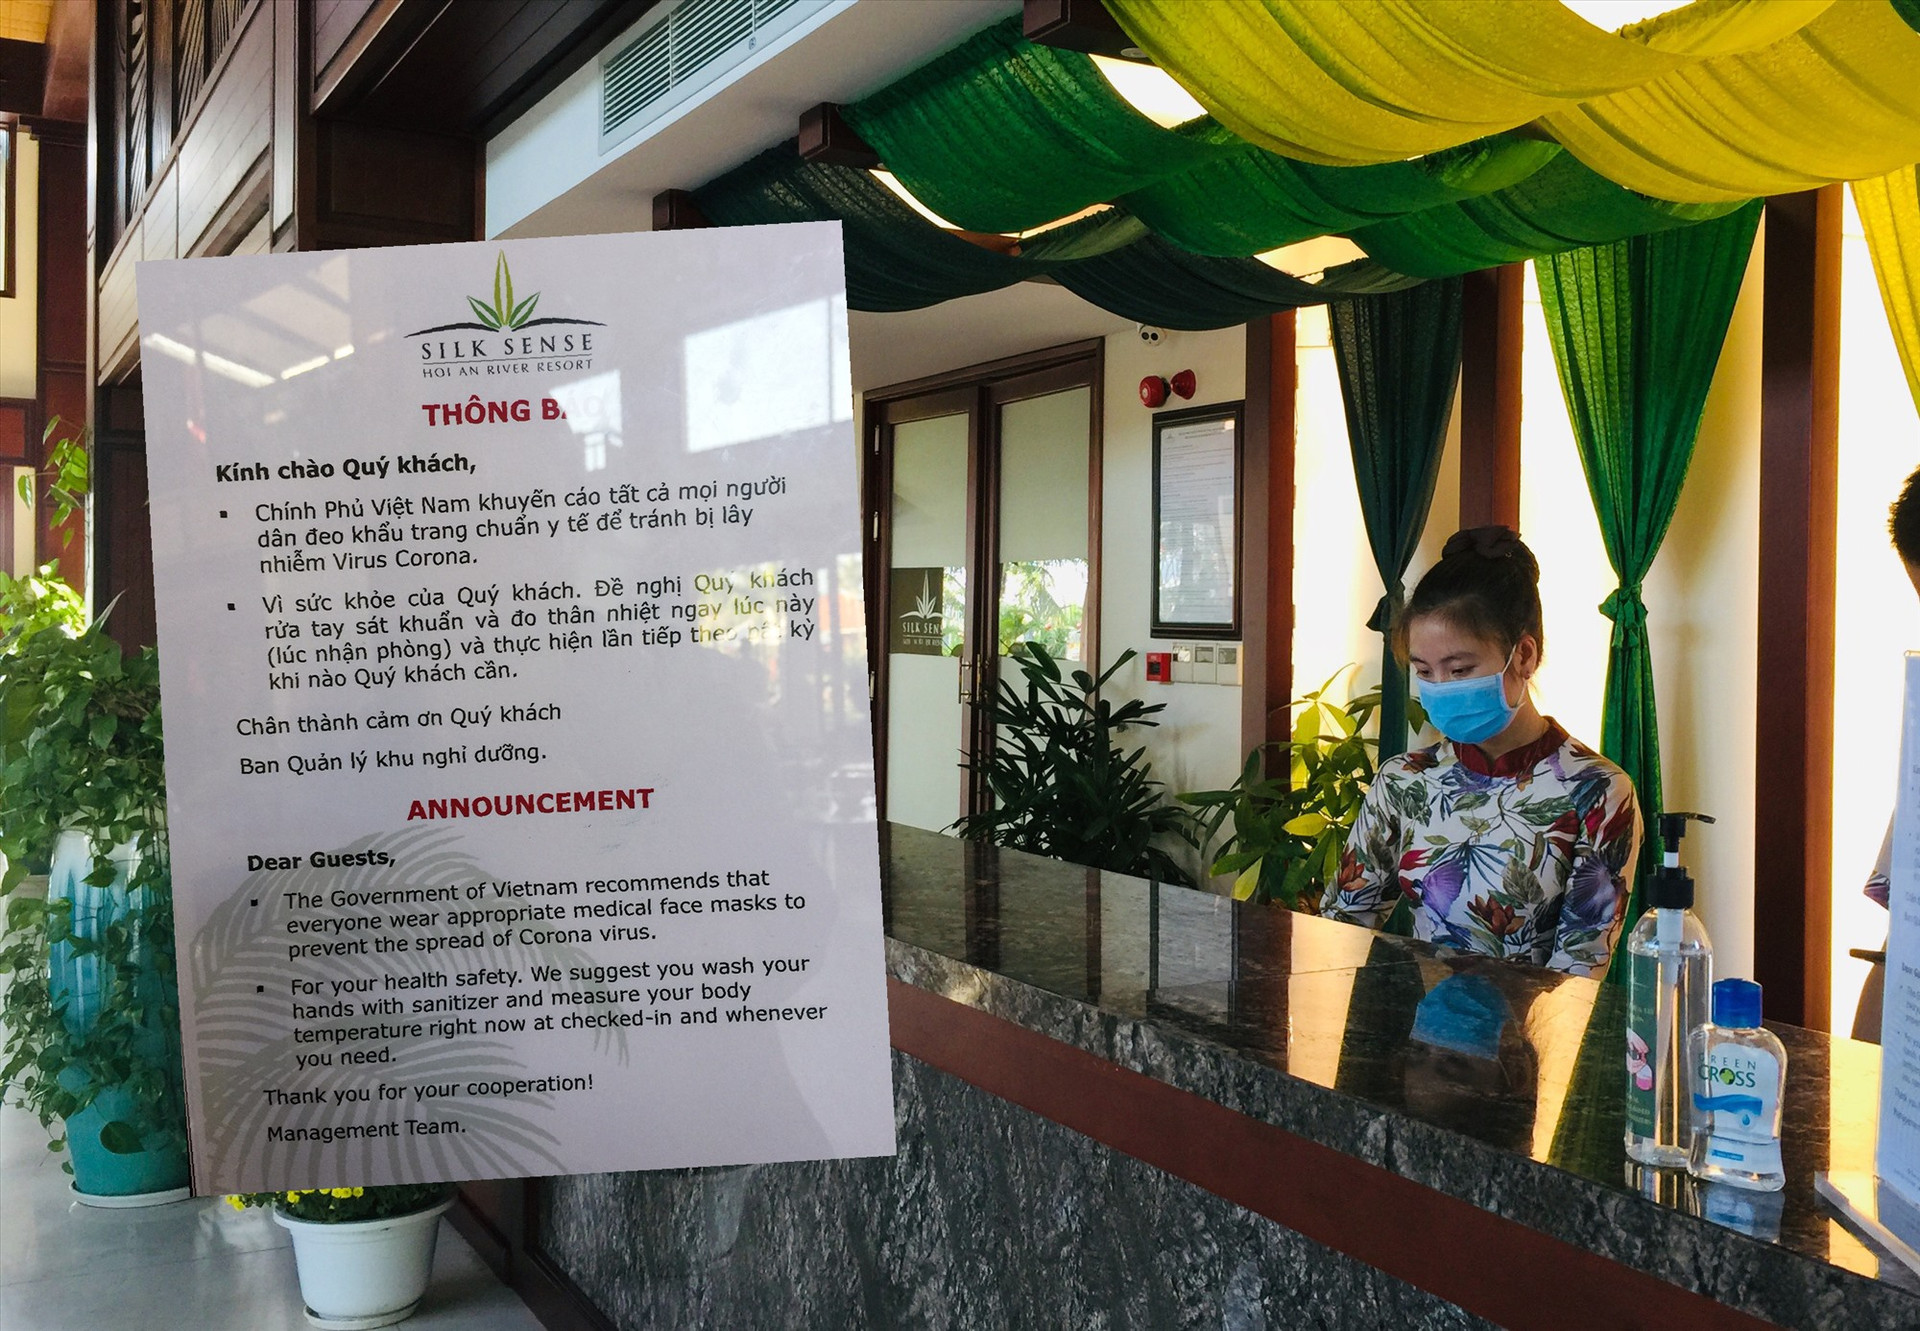 Mẫu thư khuyến cáo dịch bệnh do vi rút corona ngắn gọn bằng 2 thứ tiếng Việt và Anh tại quầy lễ tân Silk Sense Resort Hội An. Ảnh: H.V